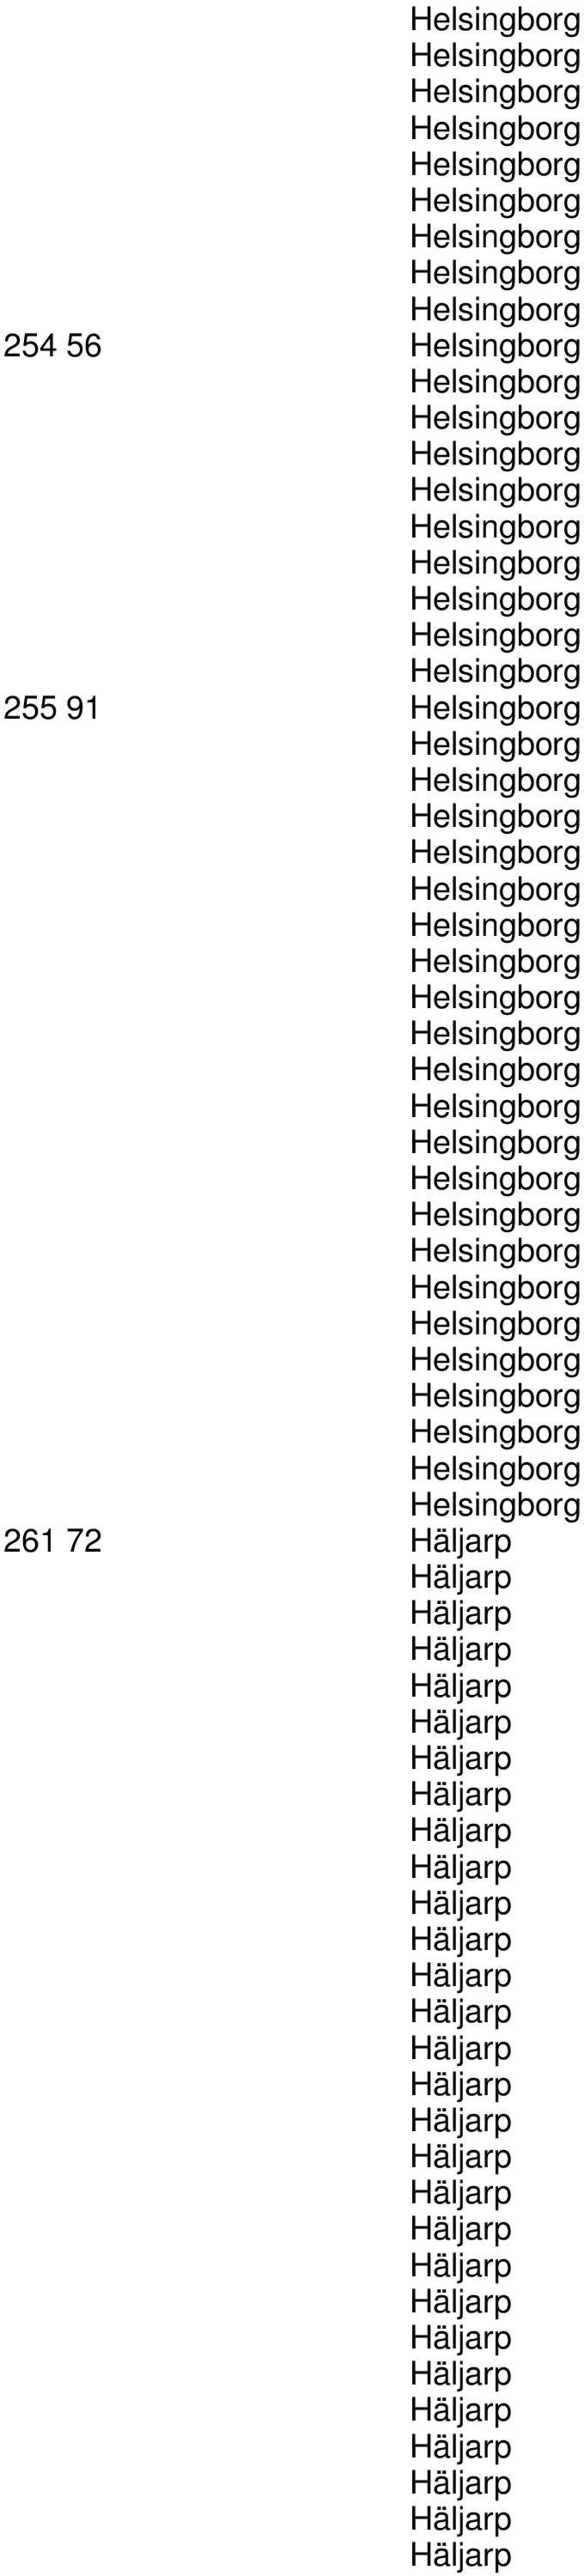 Helsingborg Helsingborg Helsingborg Helsingborg Helsingborg Helsingborg Helsingborg Helsingborg Helsingborg Helsingborg Helsingborg Helsingborg 261 72 Häljarp Häljarp Häljarp Häljarp